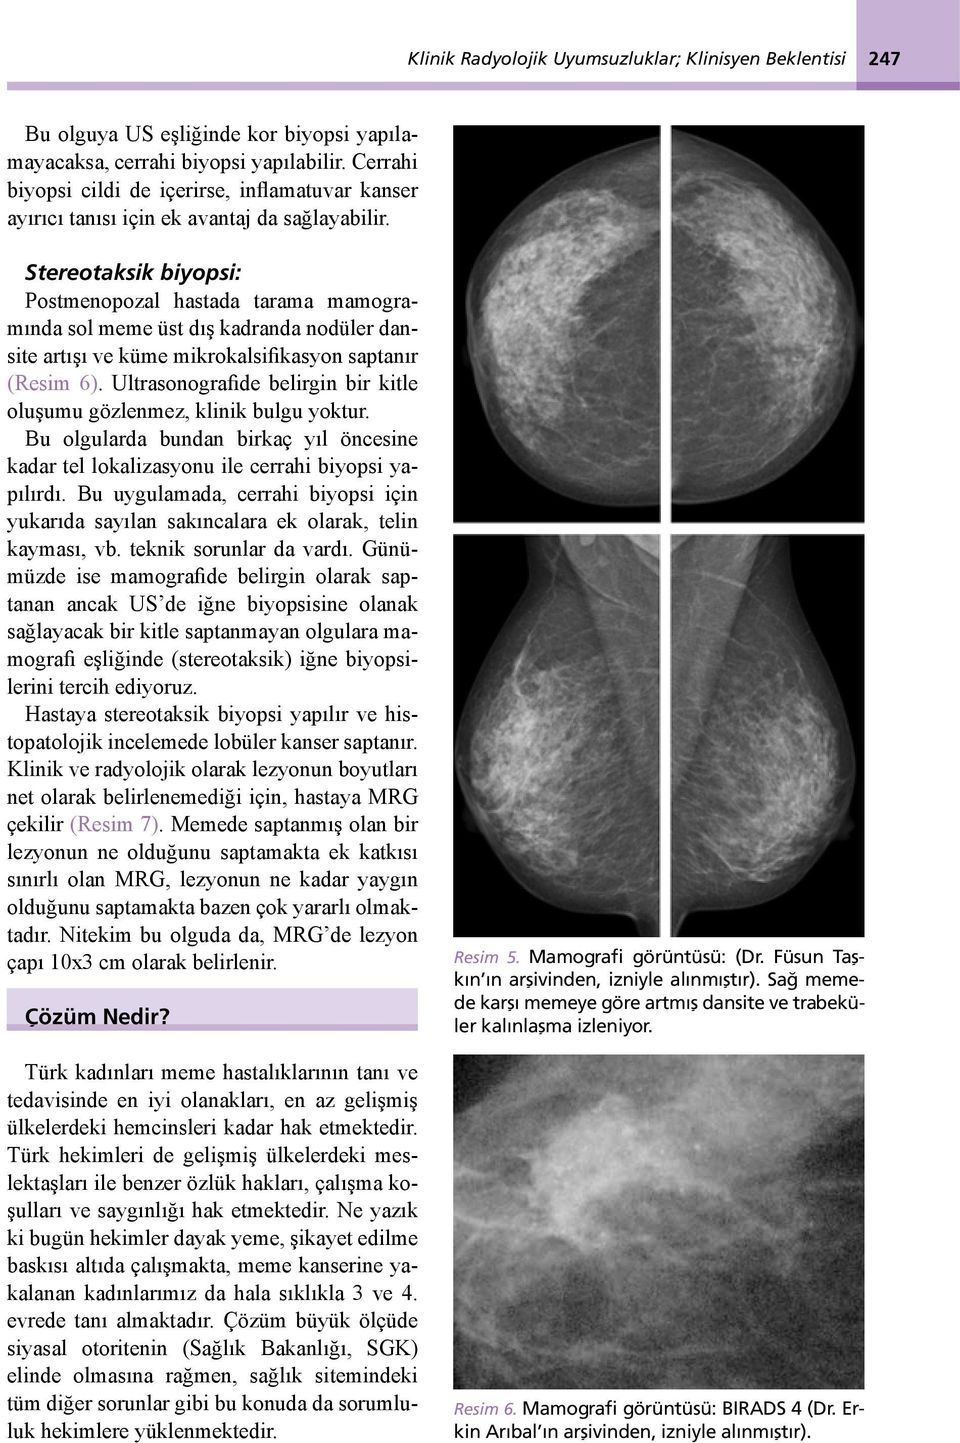 Stereotaksik biyopsi: Postmenopozal hastada tarama mamogramında sol meme üst dış kadranda nodüler dansite artışı ve küme mikrokalsifikasyon saptanır (Resim 6).